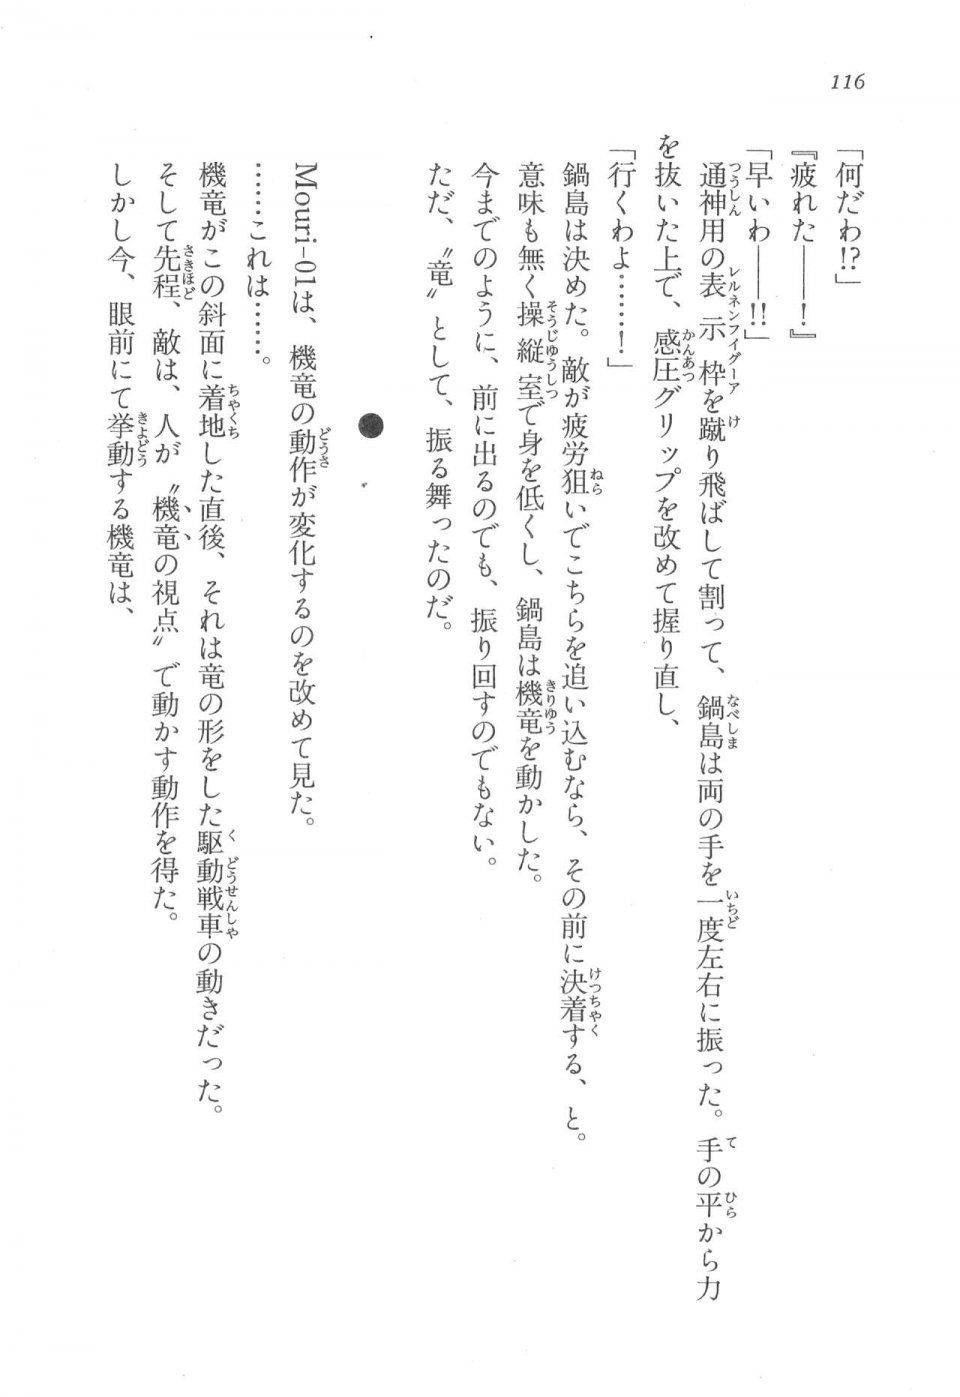 Kyoukai Senjou no Horizon LN Vol 17(7B) - Photo #116